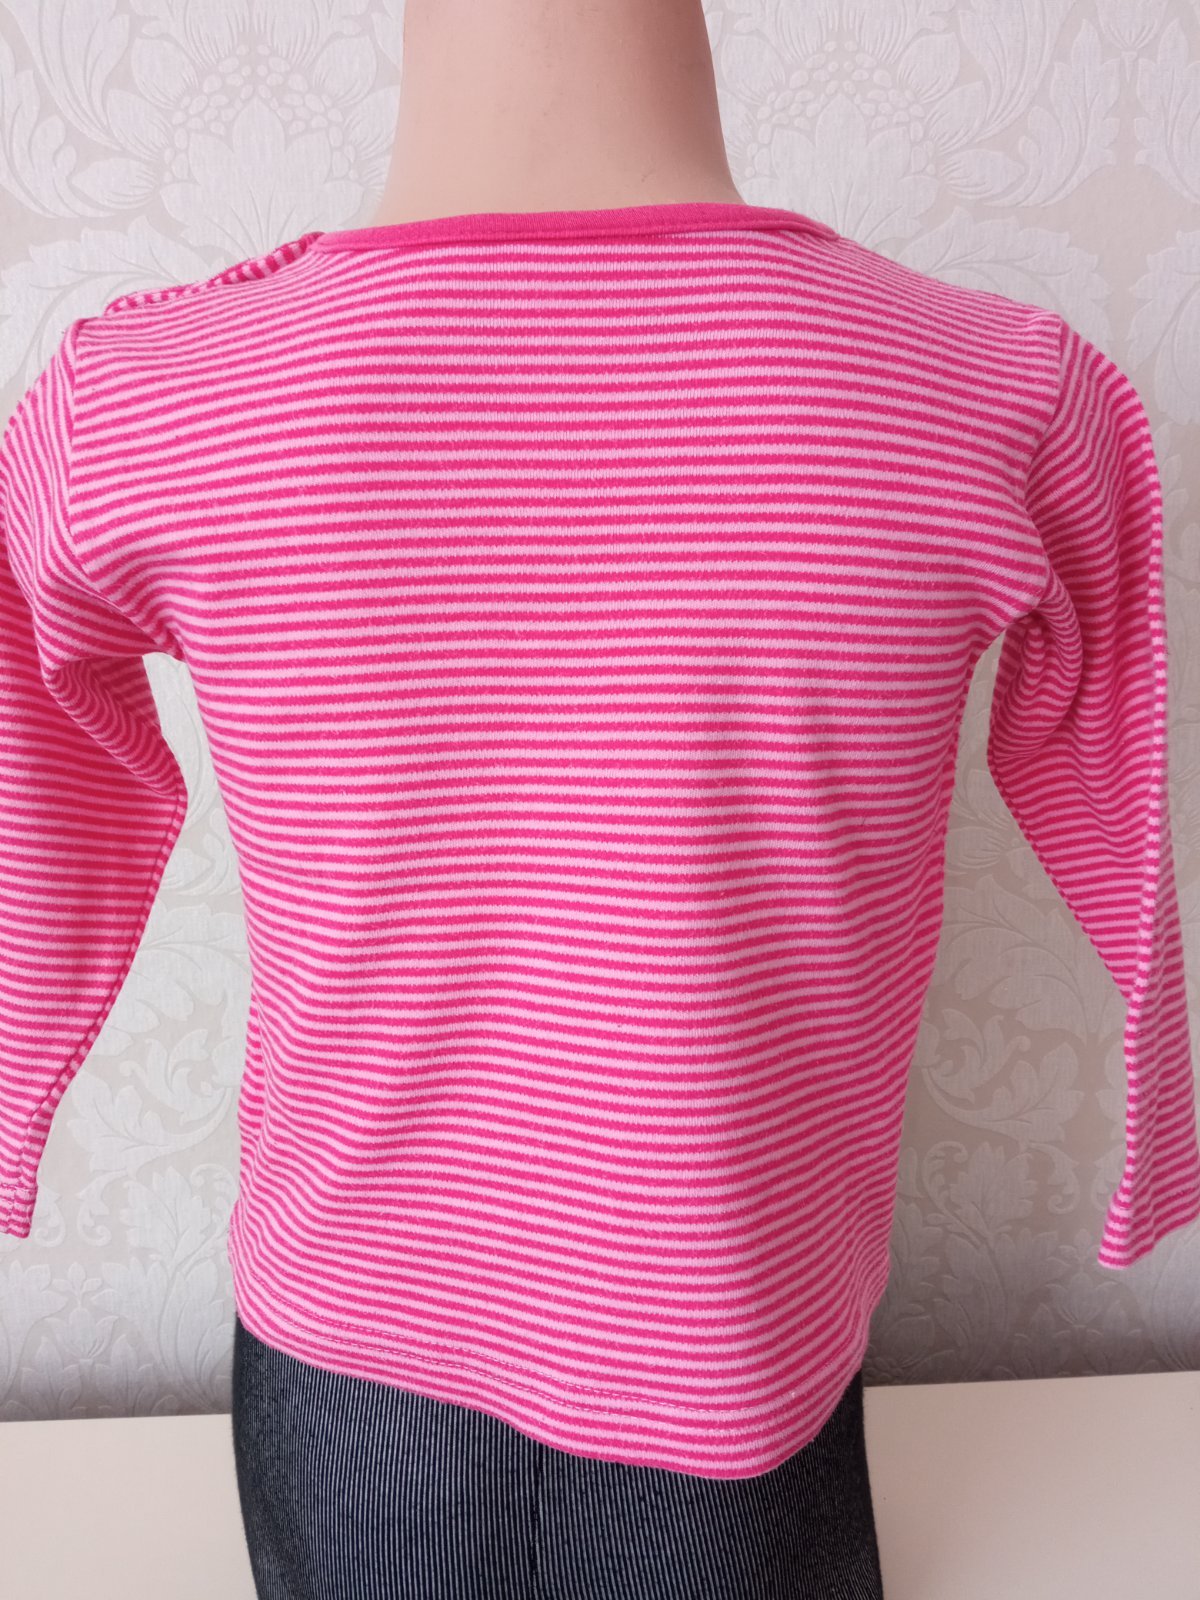 Ružové pruhované tričko (86-92)